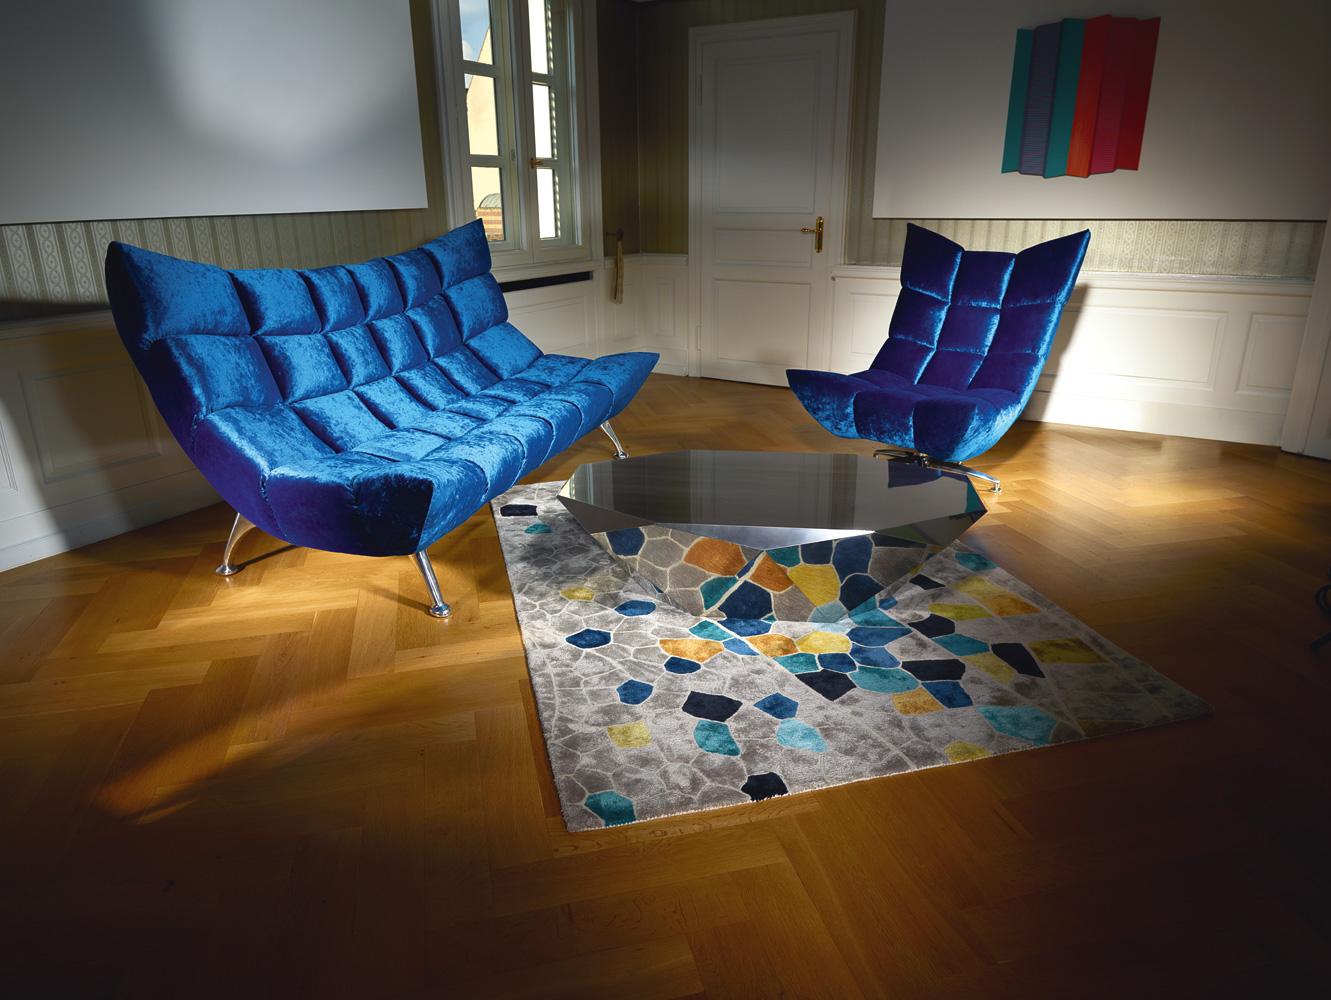 Blaue Hochlehnersitzgruppe mit multicolor Teppich #couchtisch #teppich #samtsofa #silberfarbenercouchtisch ©Bretz, Design: Meera Rathai